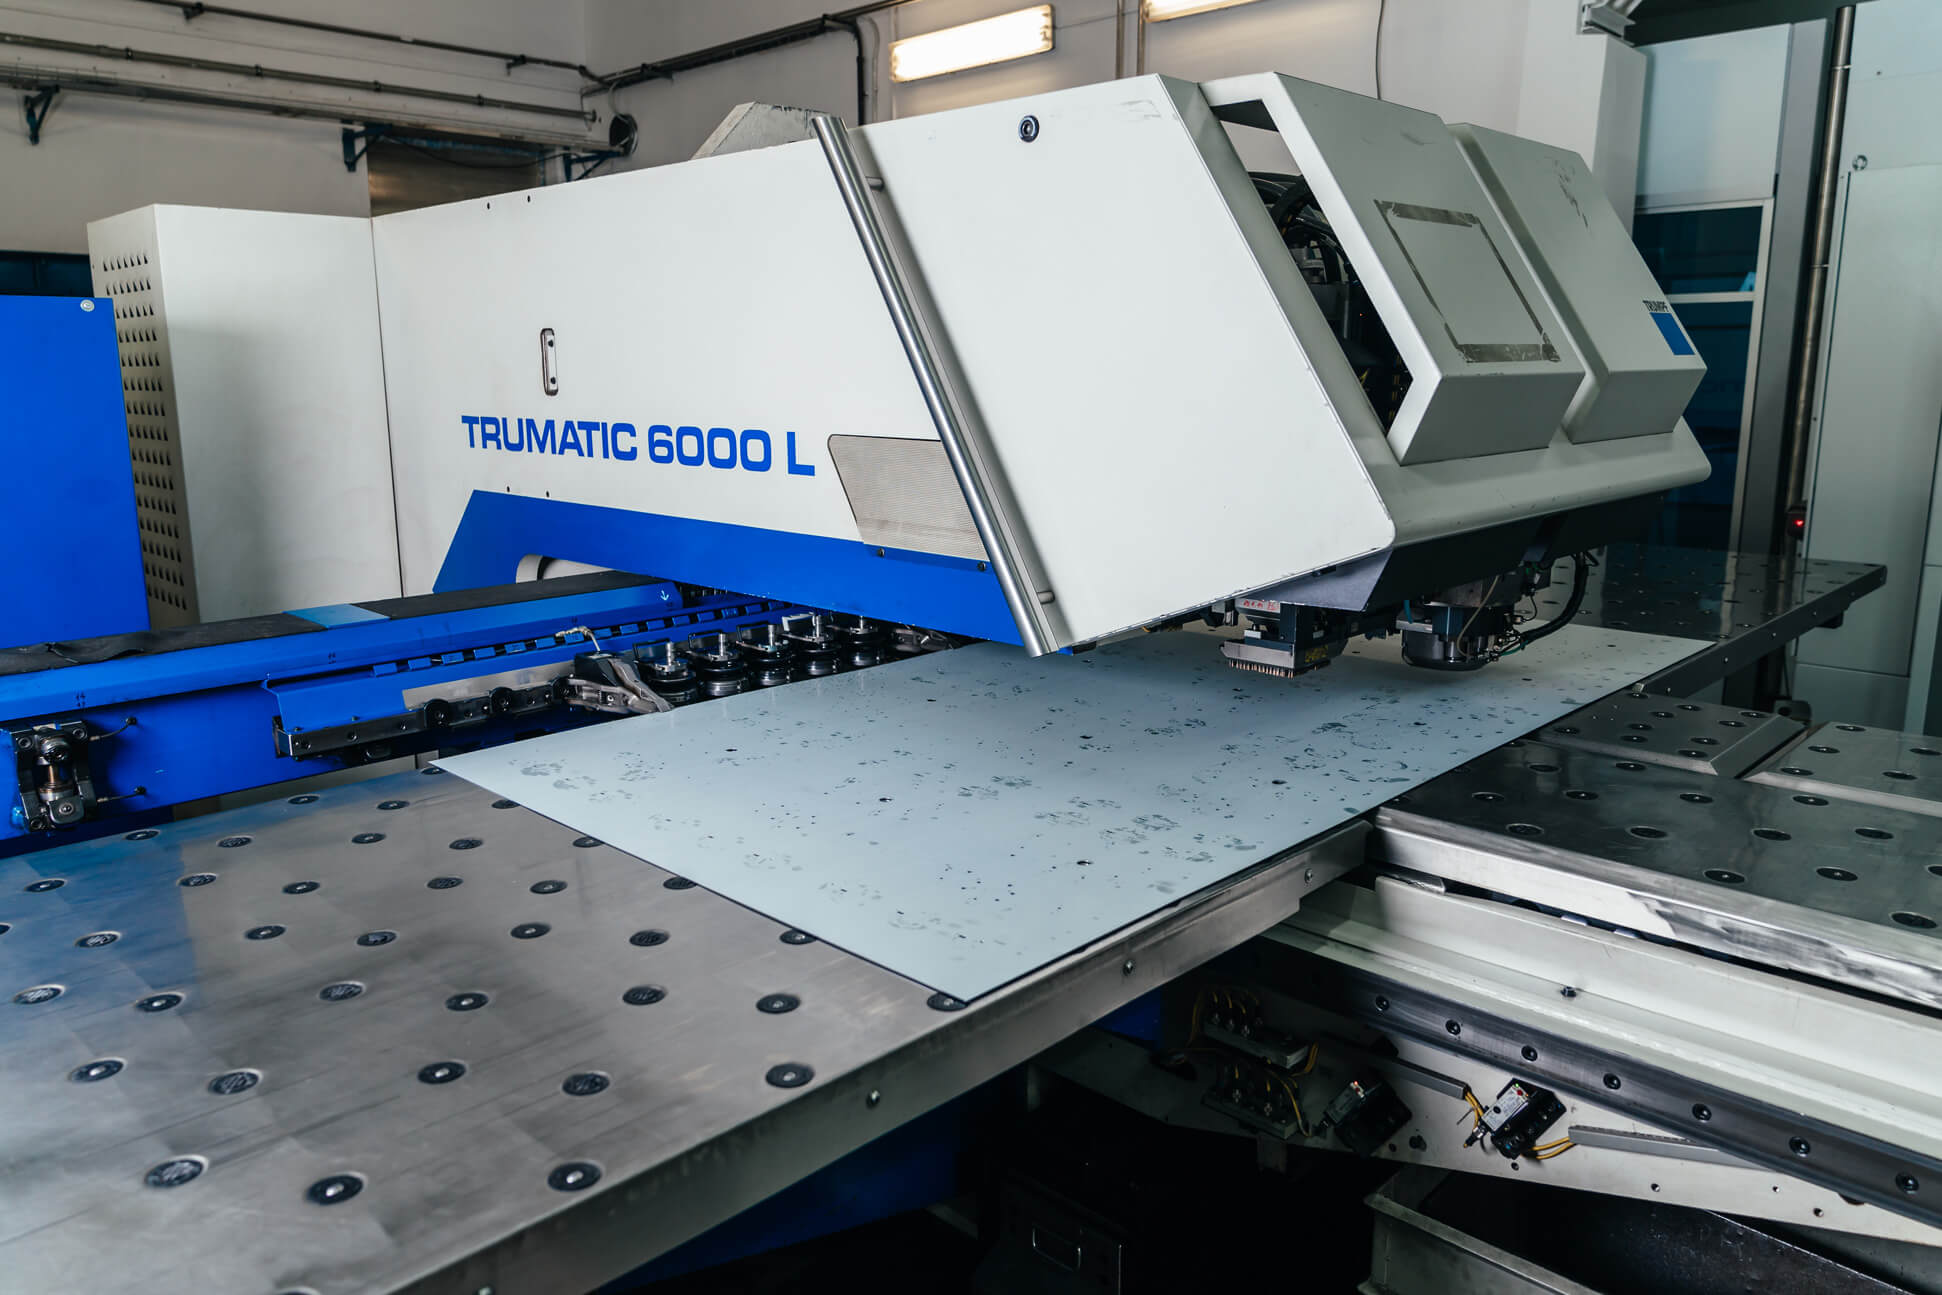 Machine TRUMATIC 6000 L - cutting and laser